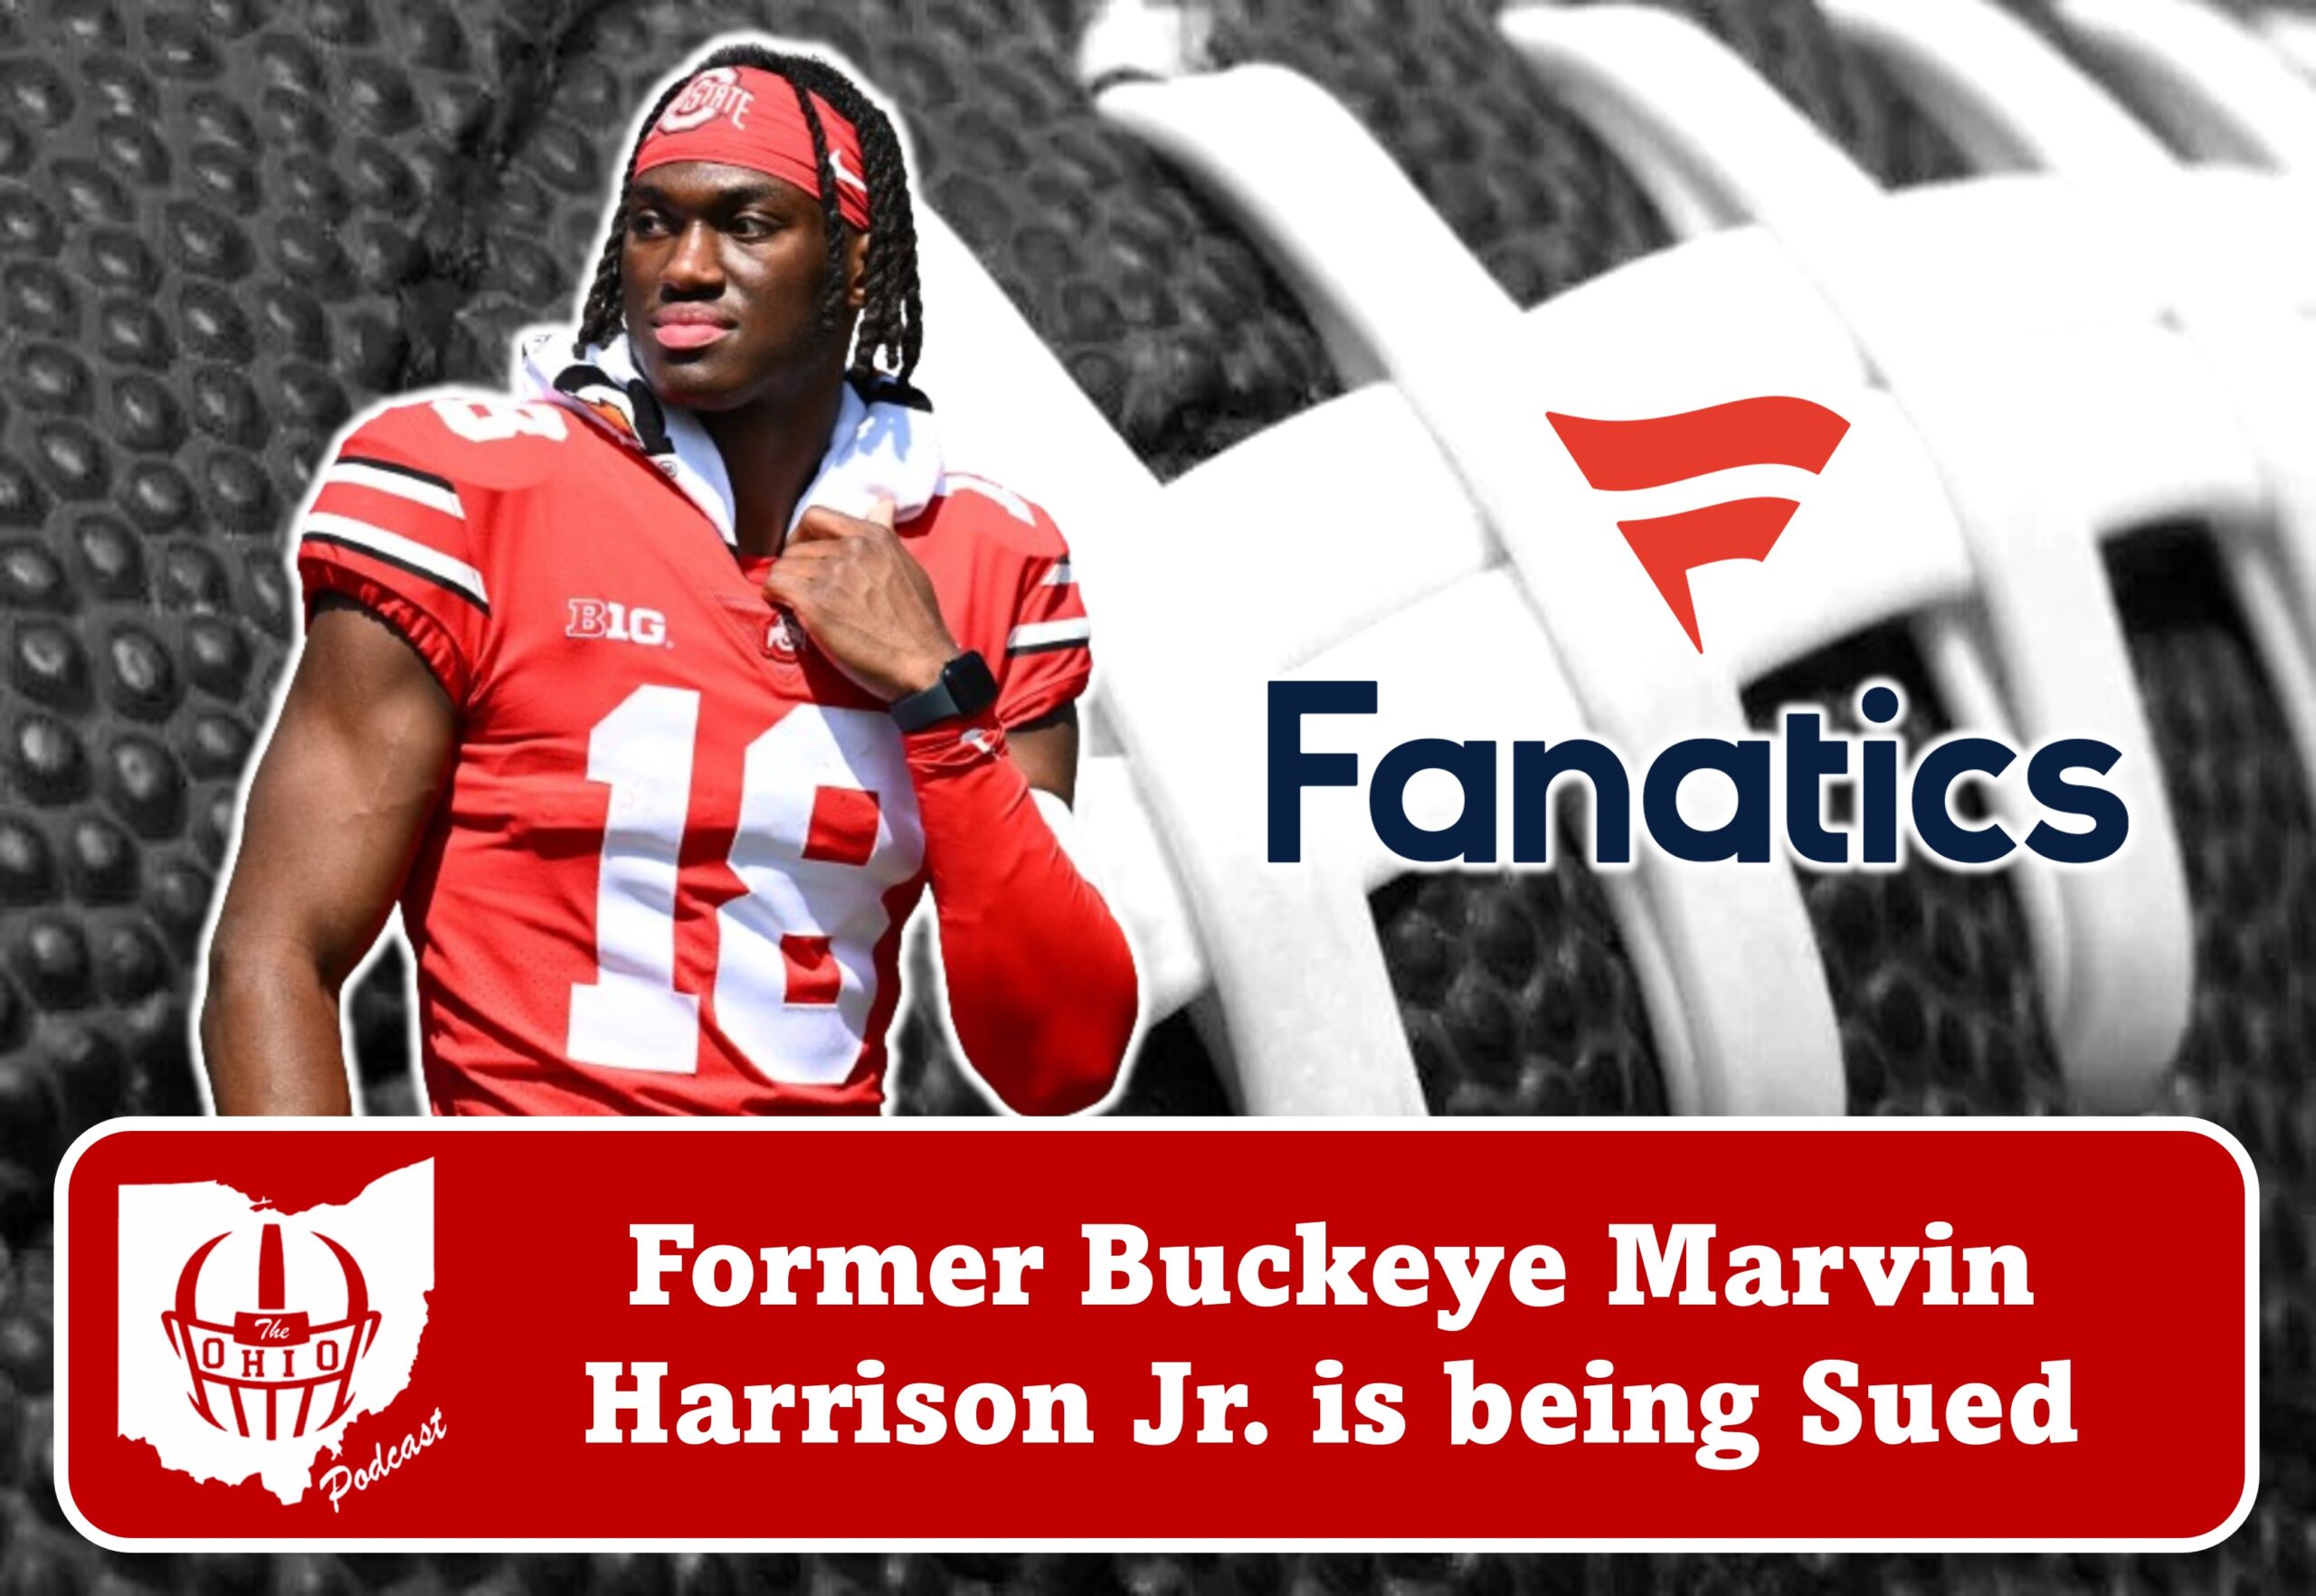 Former Buckeye Marvin Harrison Jr. is being Sued